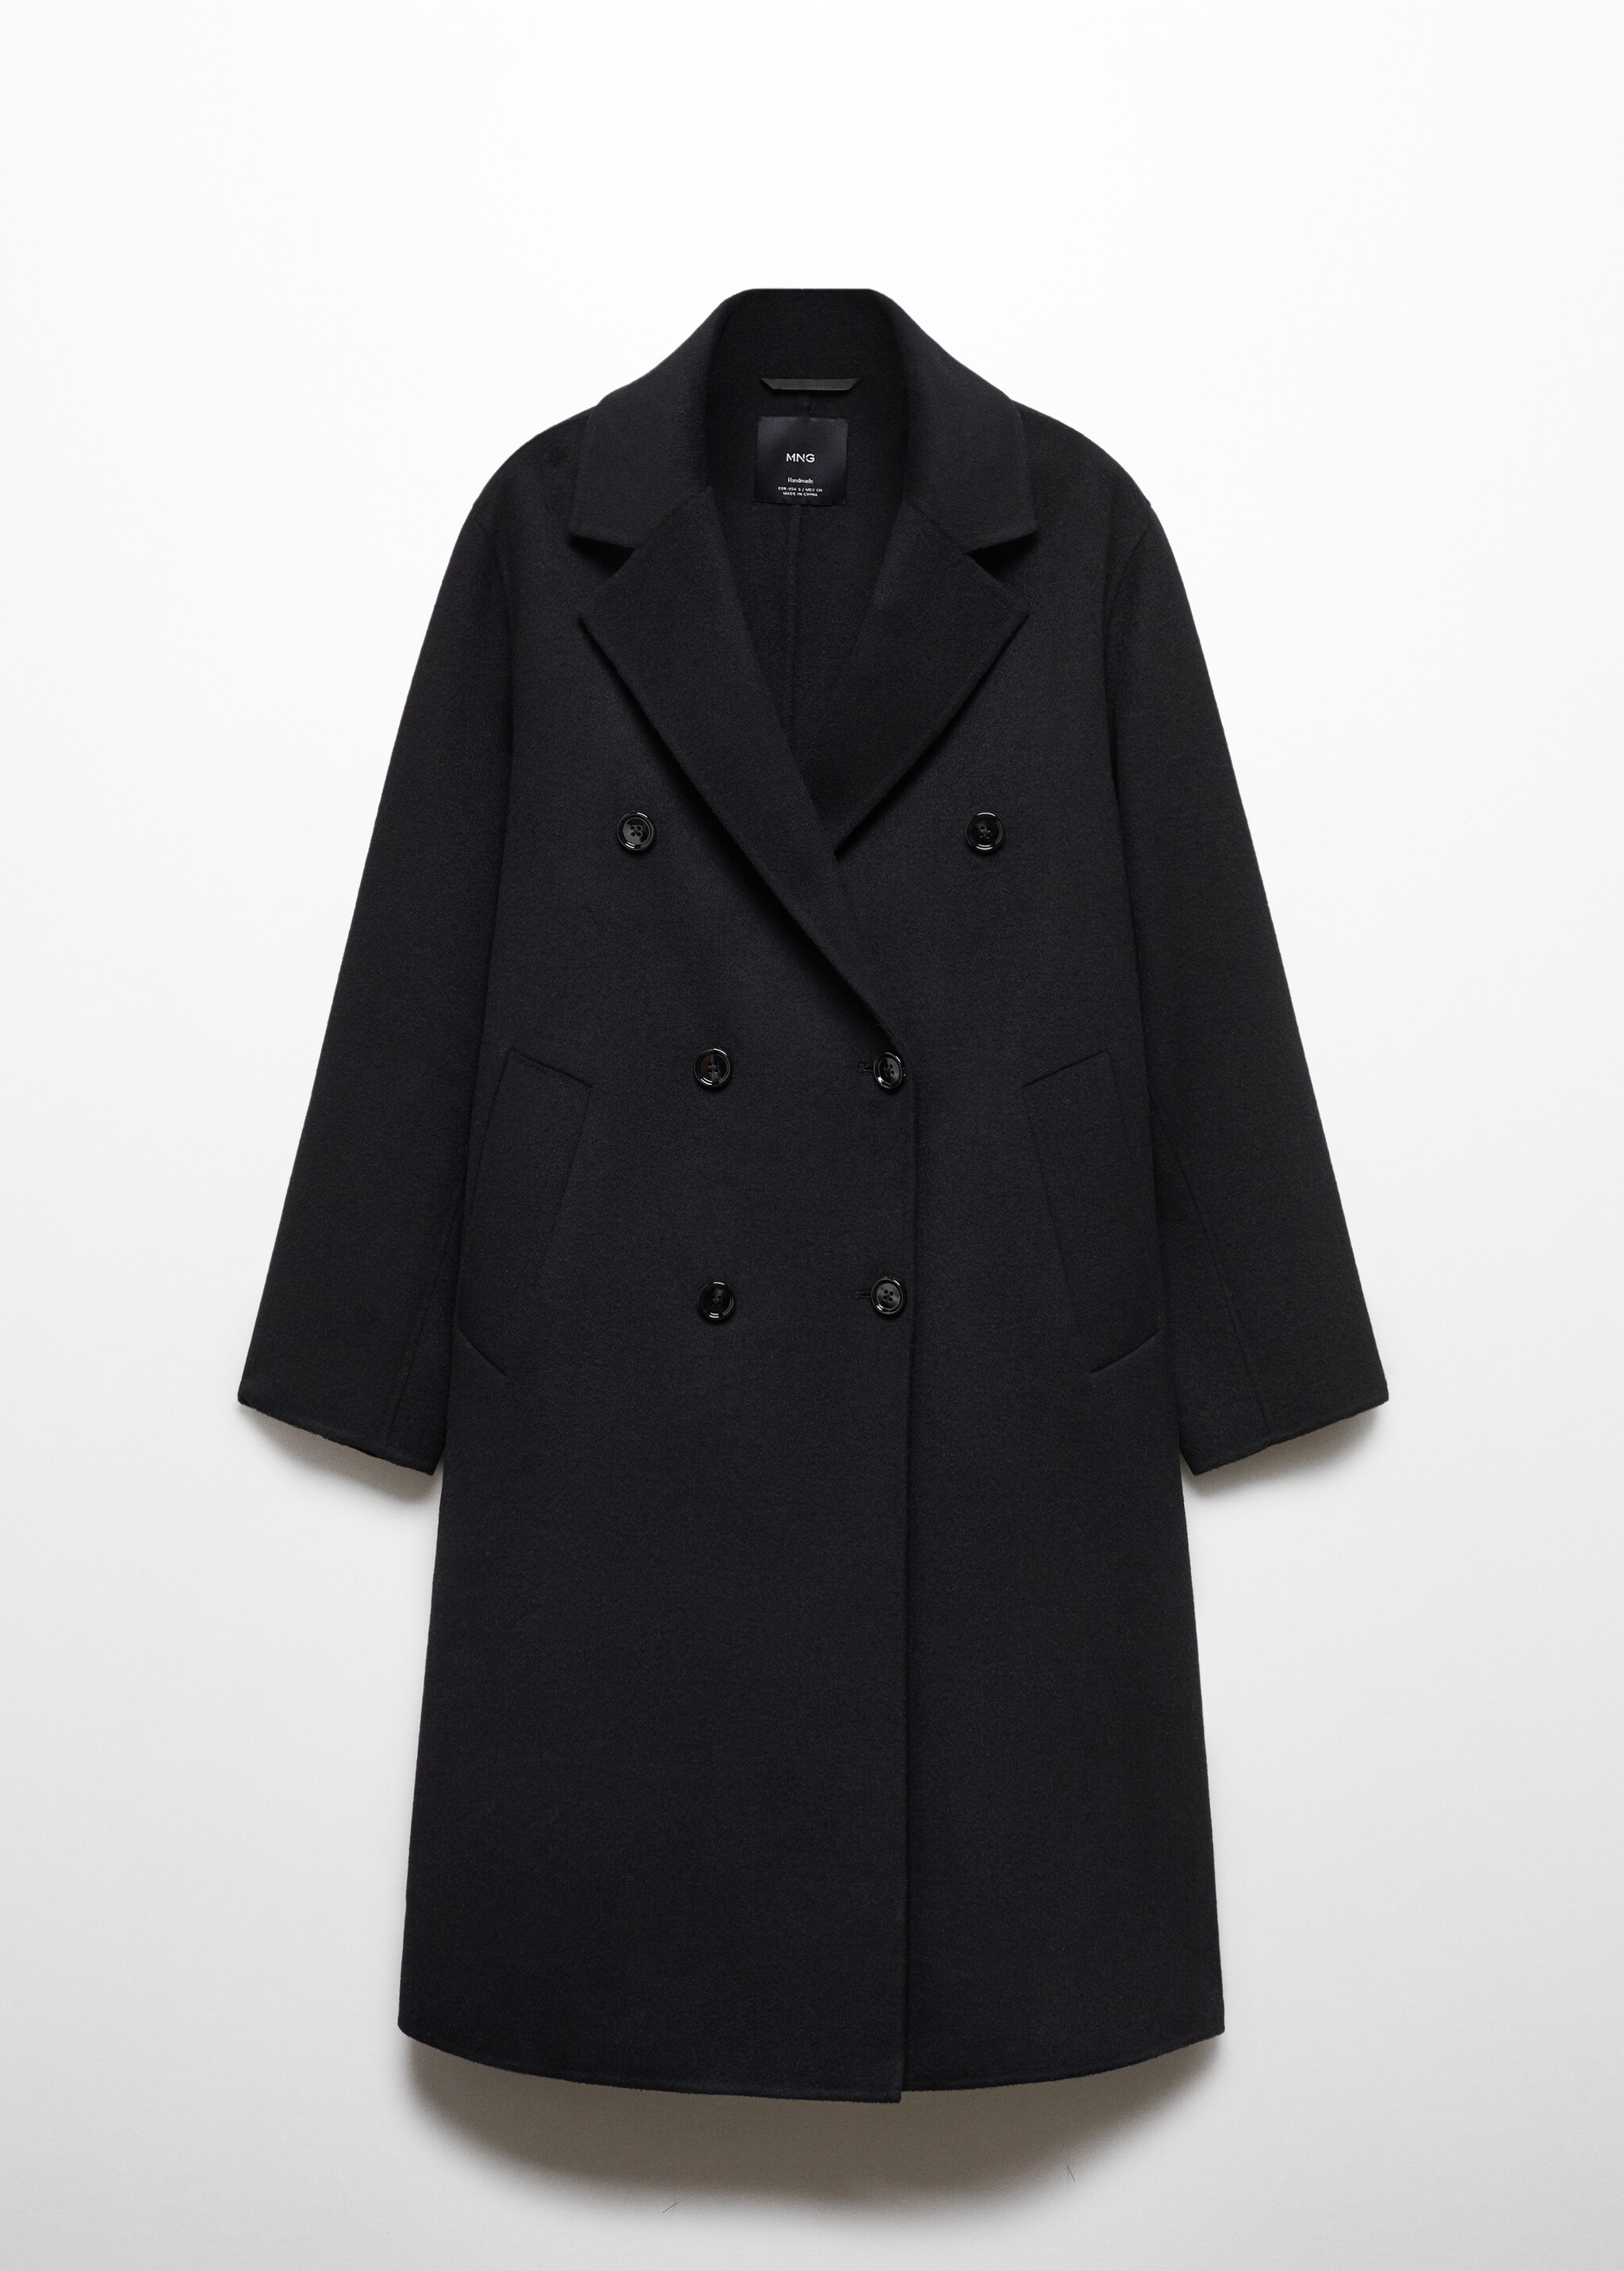 Объемное пальто из шерсти ручной работы - Изделие без модели